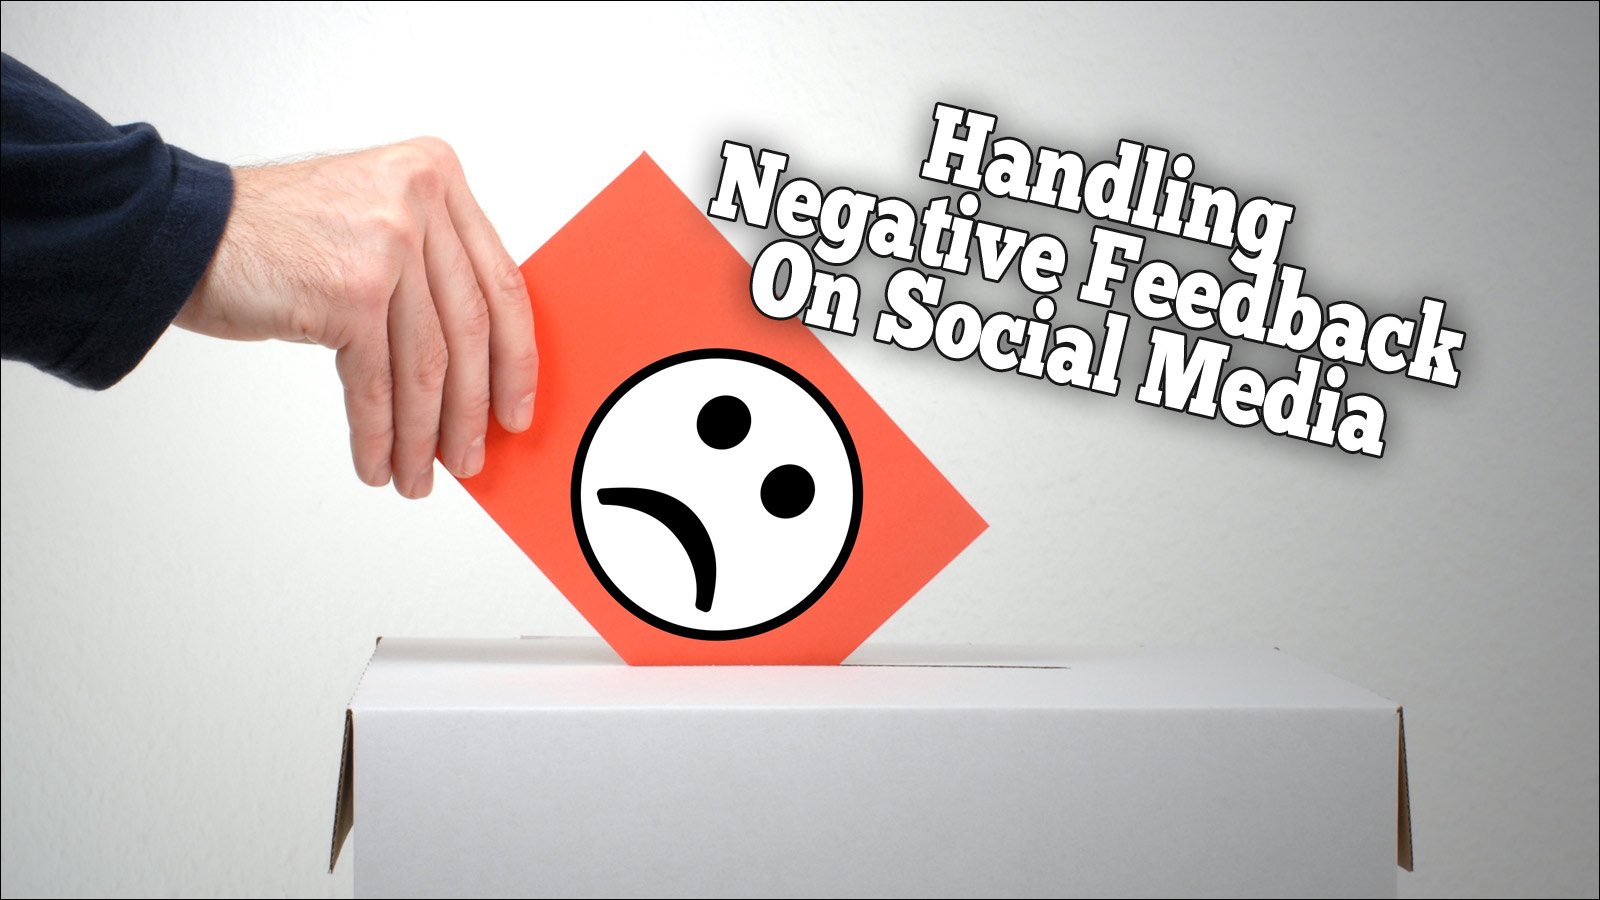 Handling Negative Feedback On Social Media